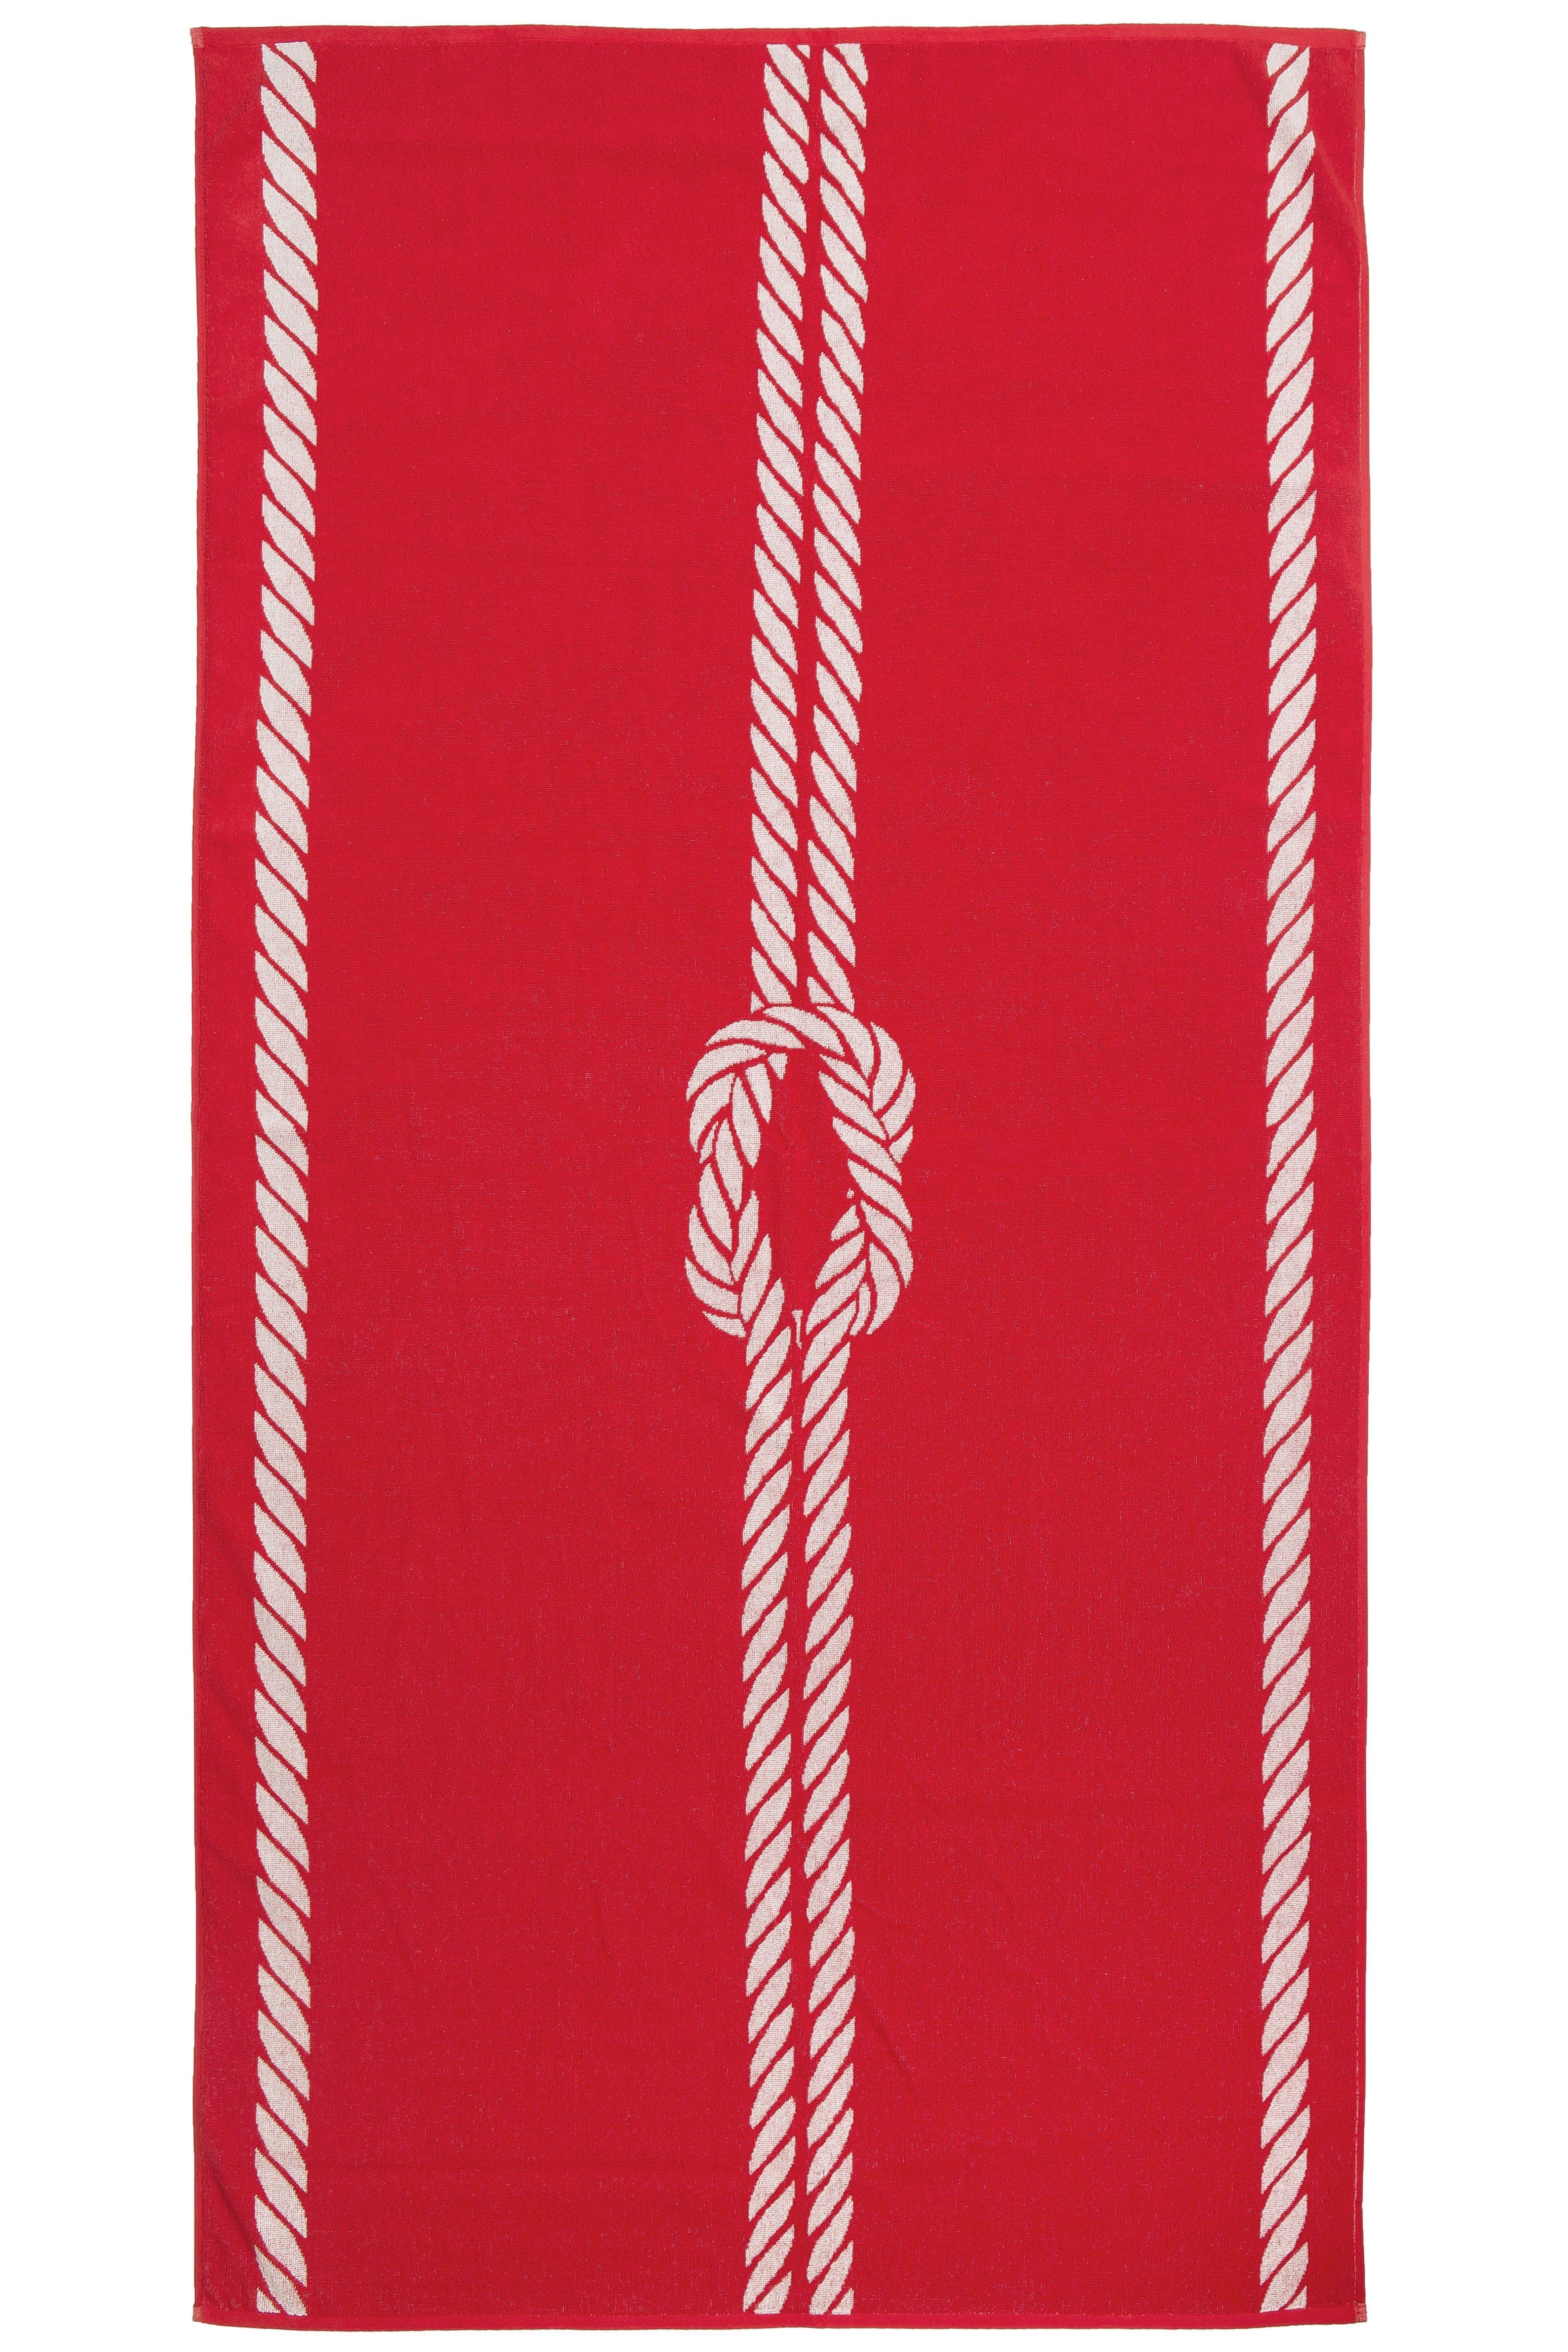 ZOLLNER Strandtuch, Glattvelours (1-St), 100 x 200 cm, 100% Baumwolle, vom Hotelwäschespezialisten rot-weiß